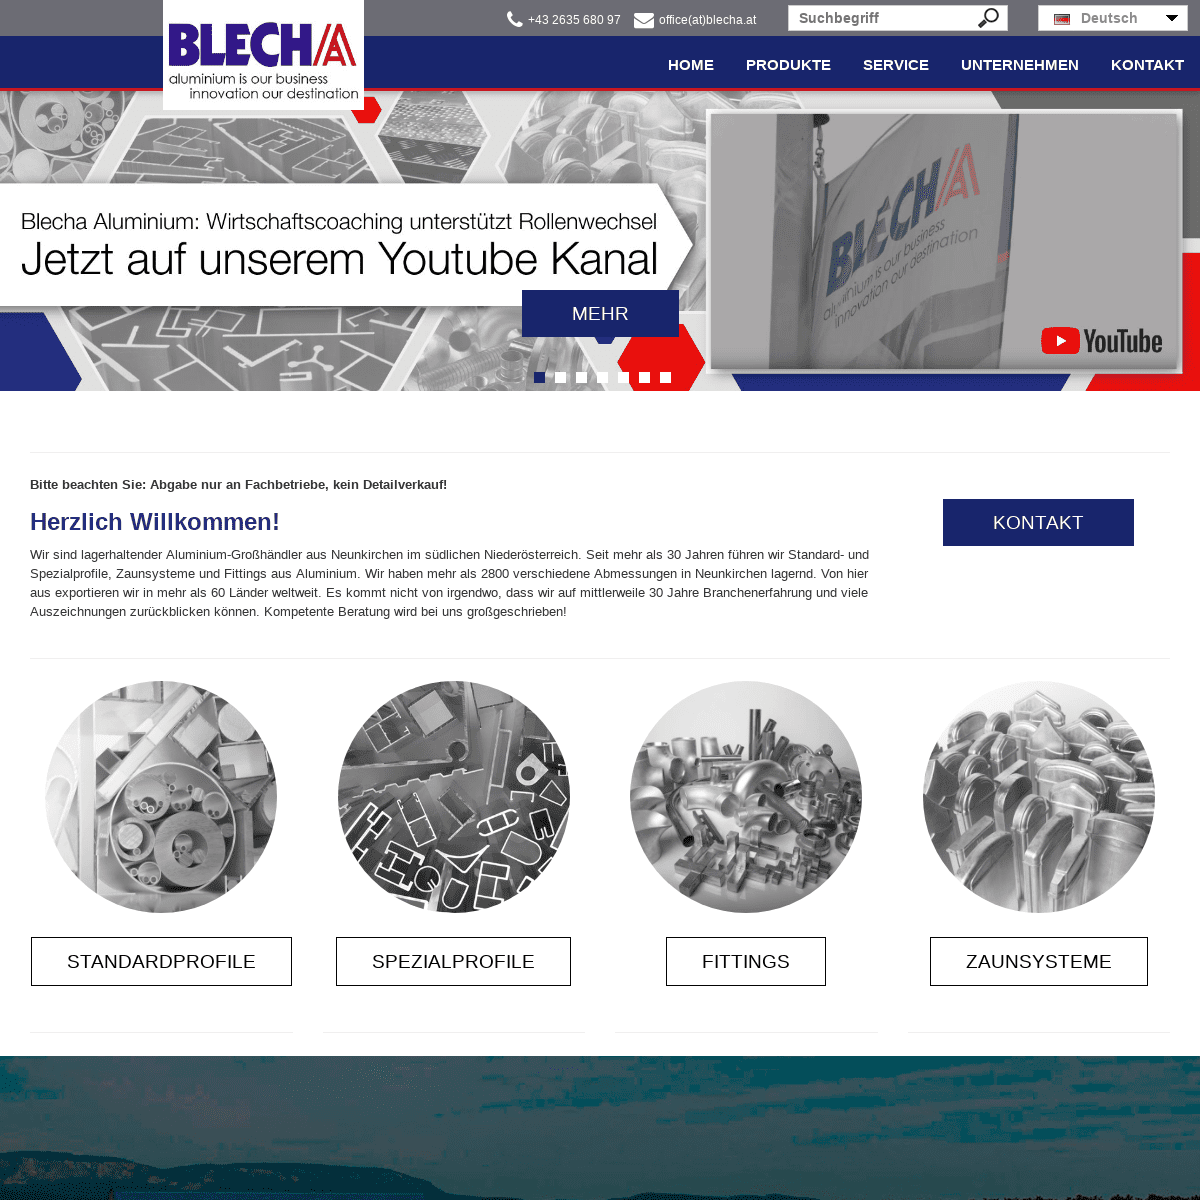 Blecha | Ihr Spezialist für Aluprofile, Zäune, Fittings & Bleche